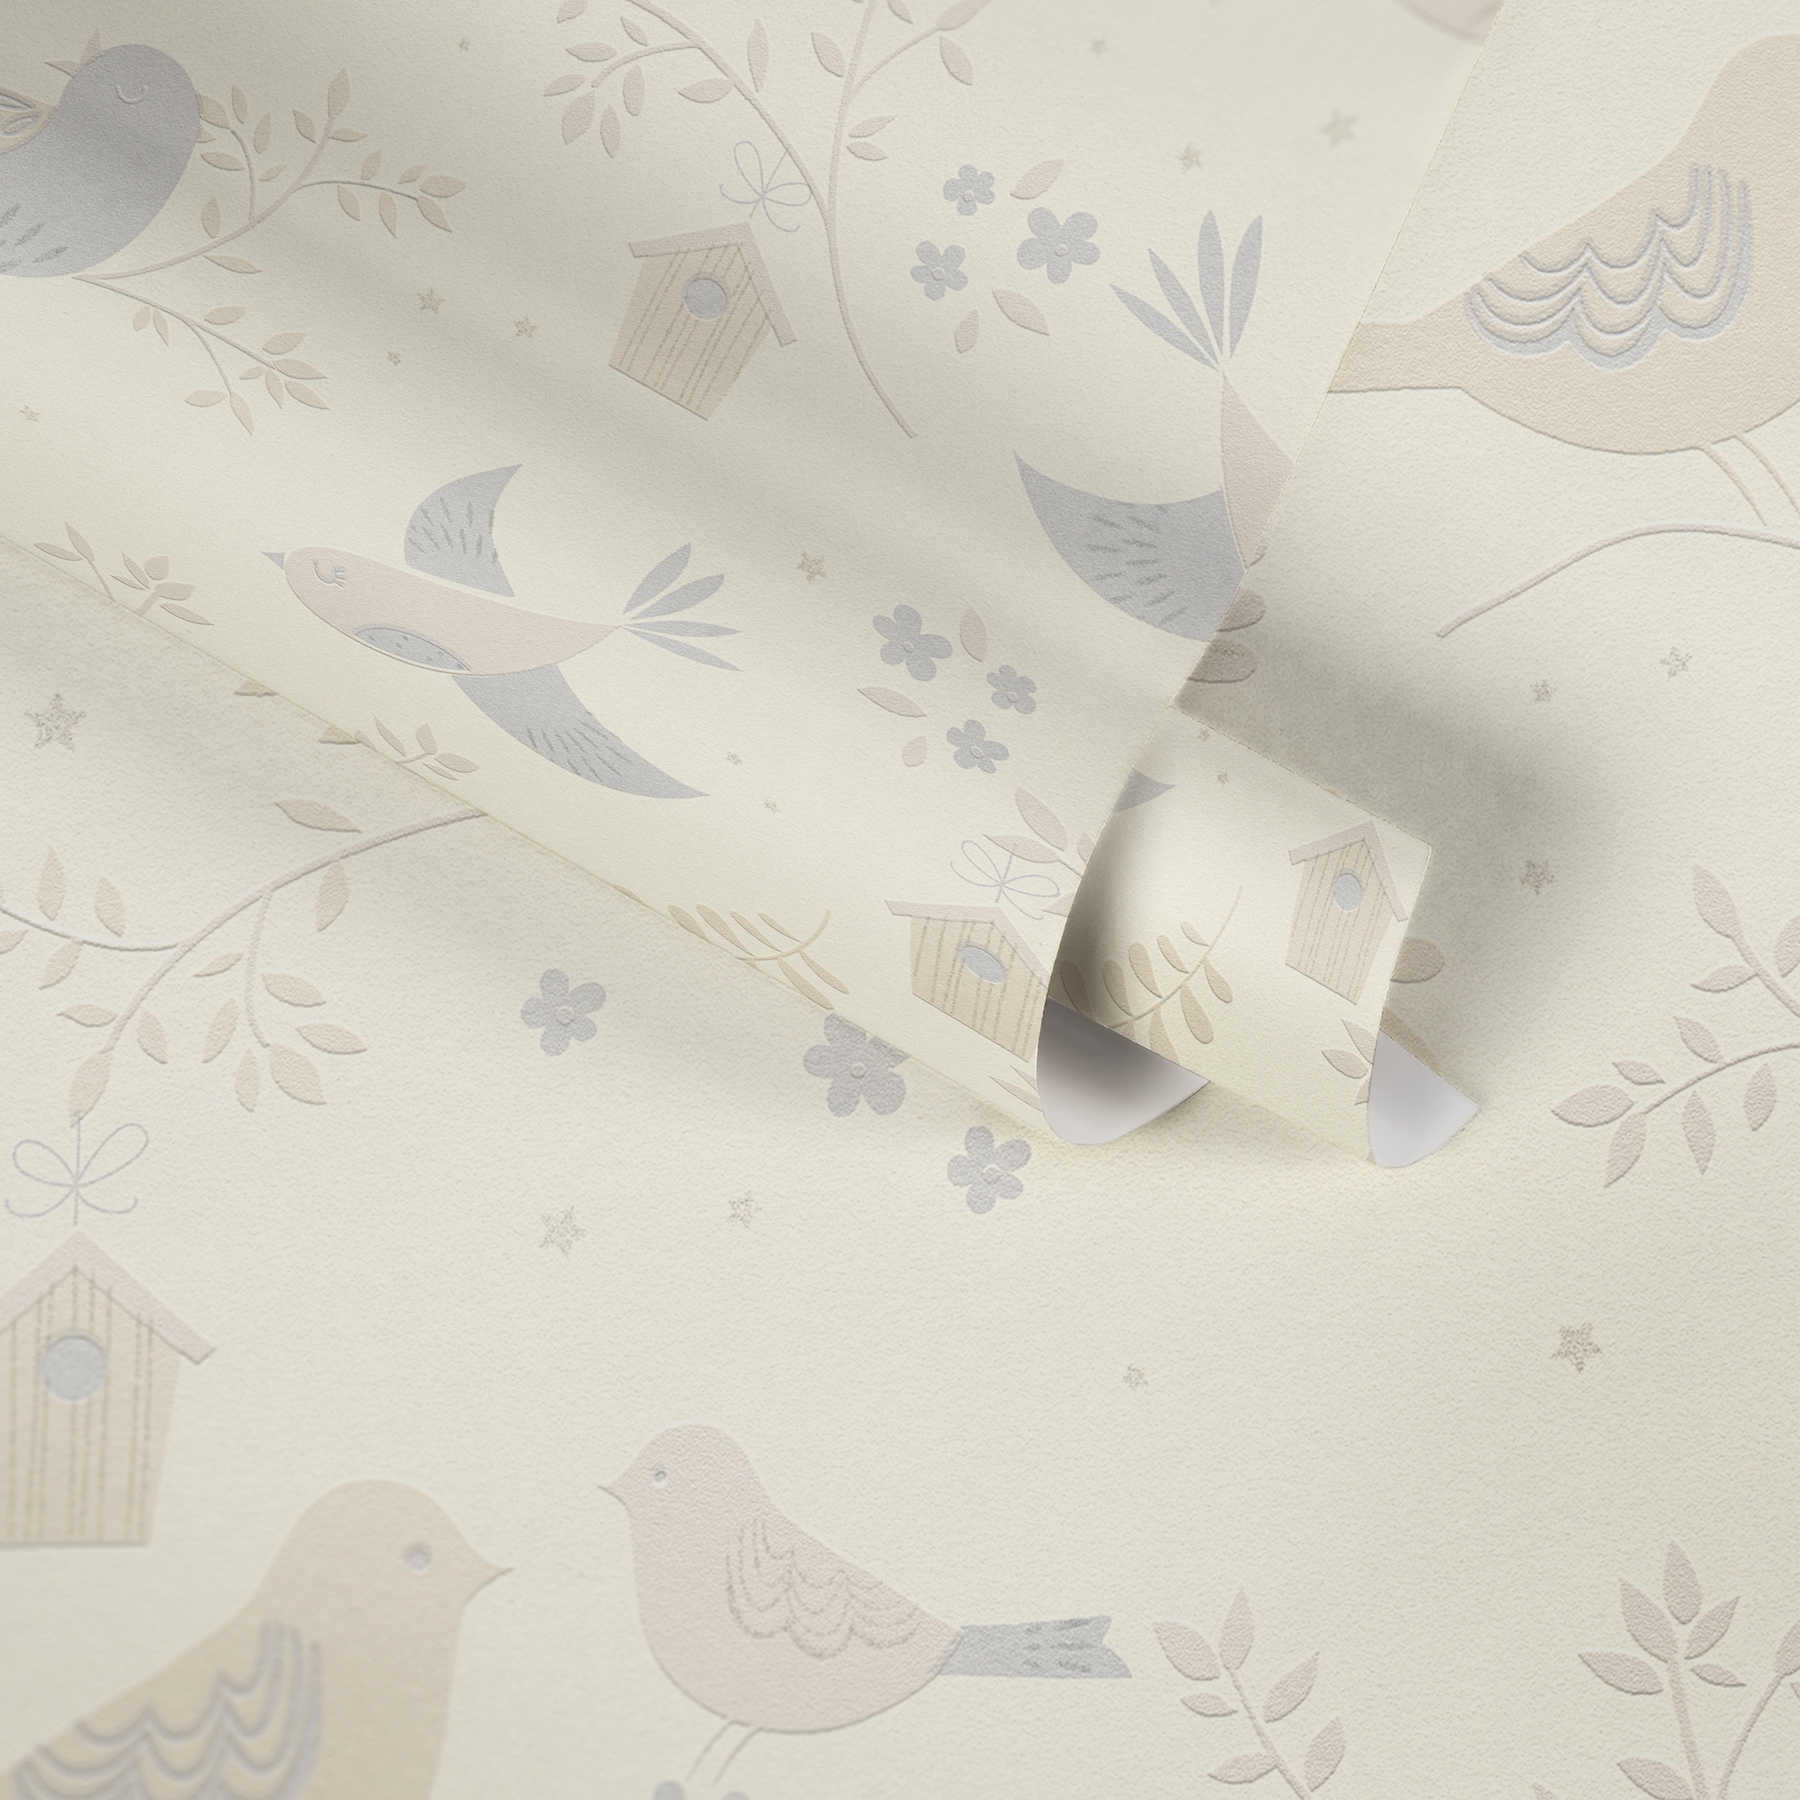             Papier peint oiseaux & fleurs pour chambre de bébé- beige, gris
        